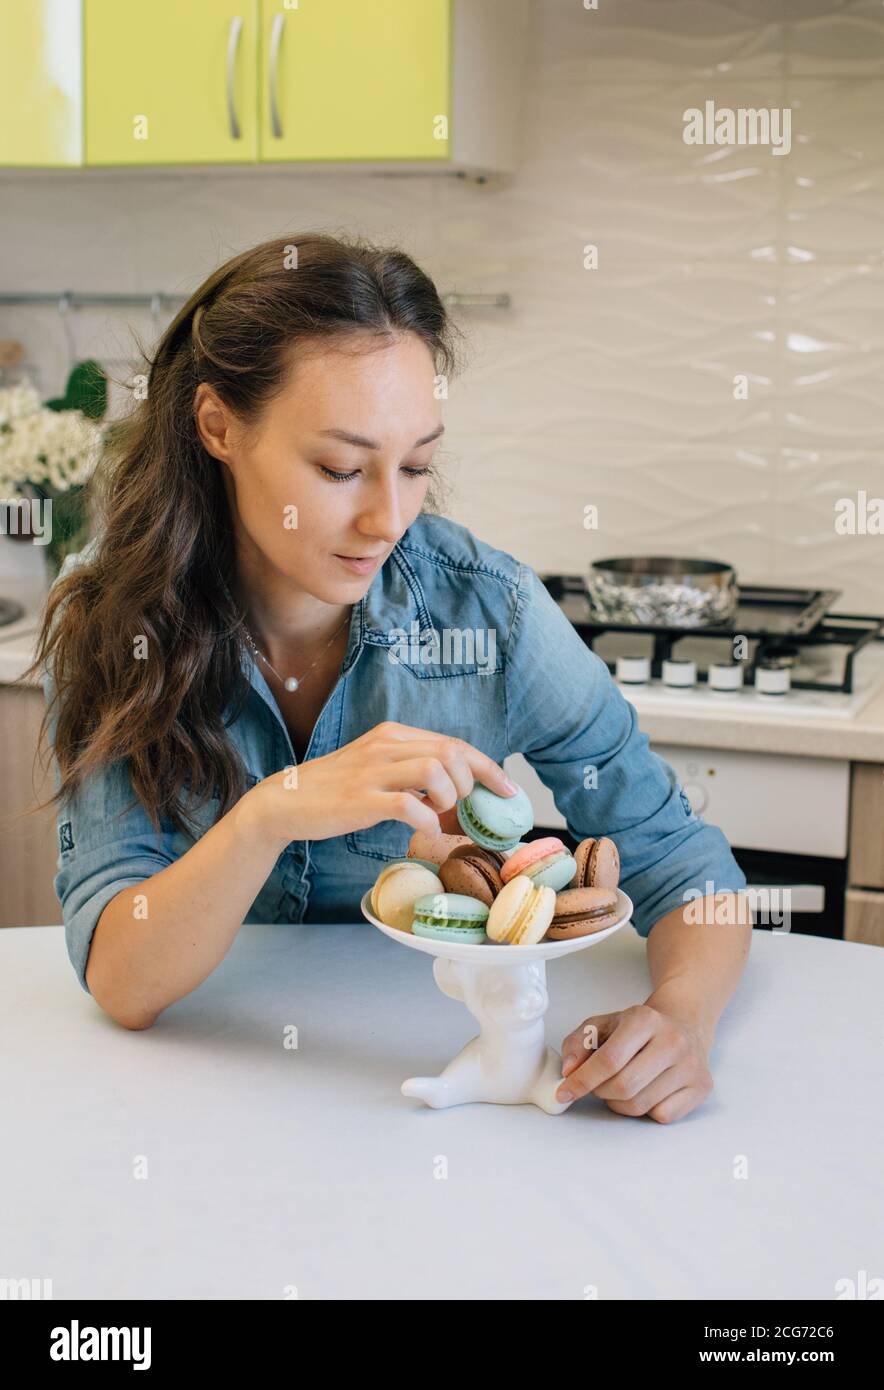 Femme assise dans une cuisine en choisissant un macaron Banque D'Images